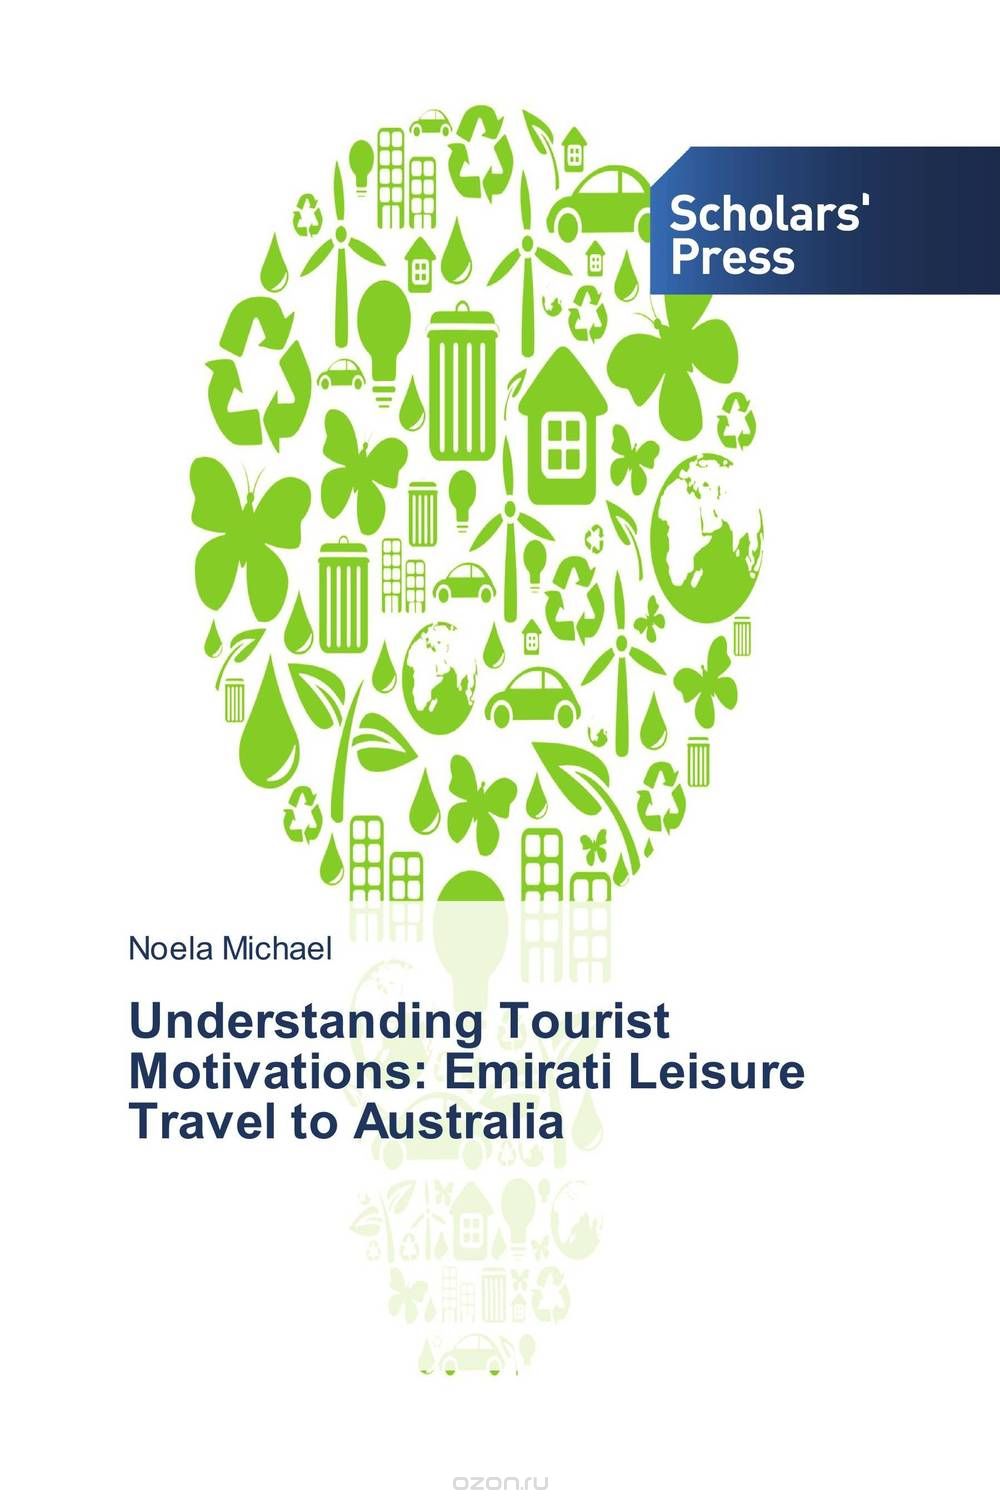 Скачать книгу "Understanding Tourist Motivations: Emirati Leisure Travel to Australia"